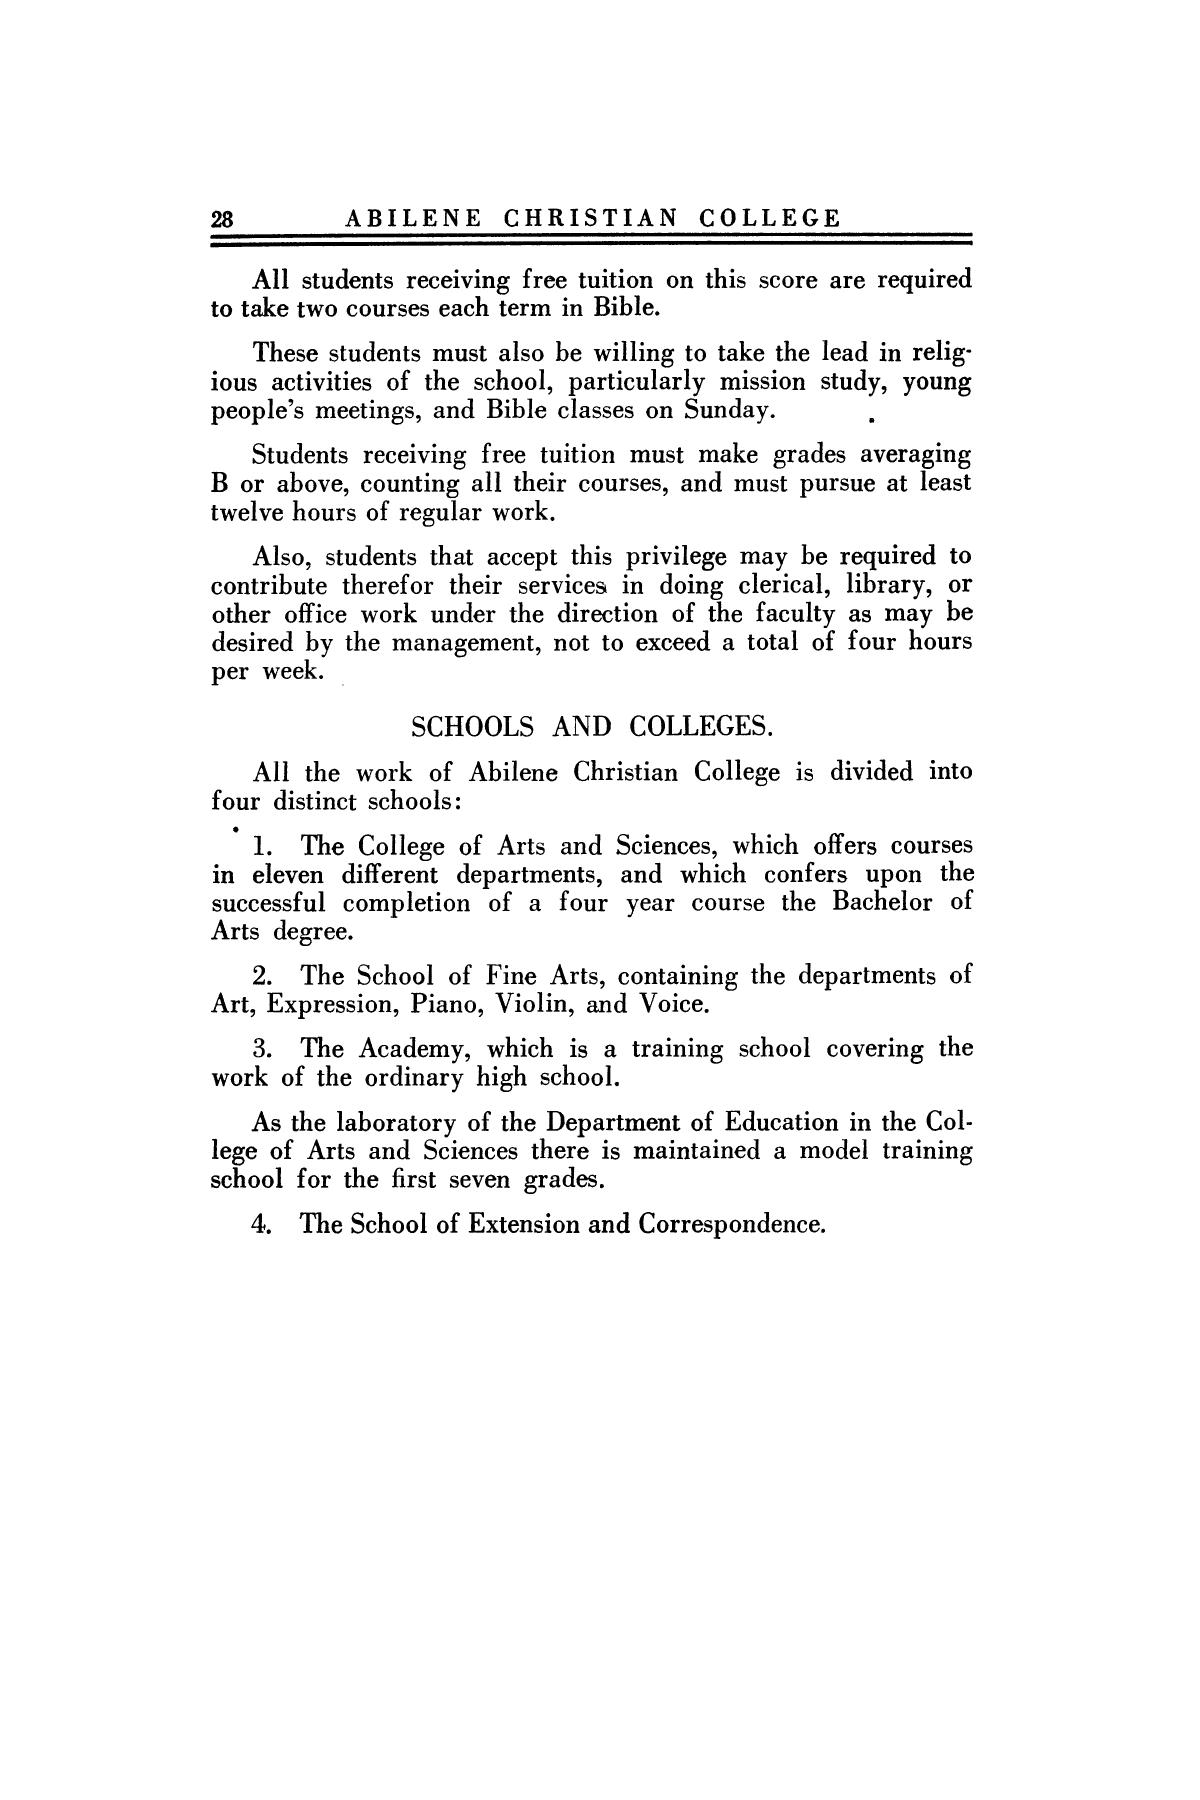 Catalog of Abilene Christian College, 1924-1925
                                                
                                                    28
                                                